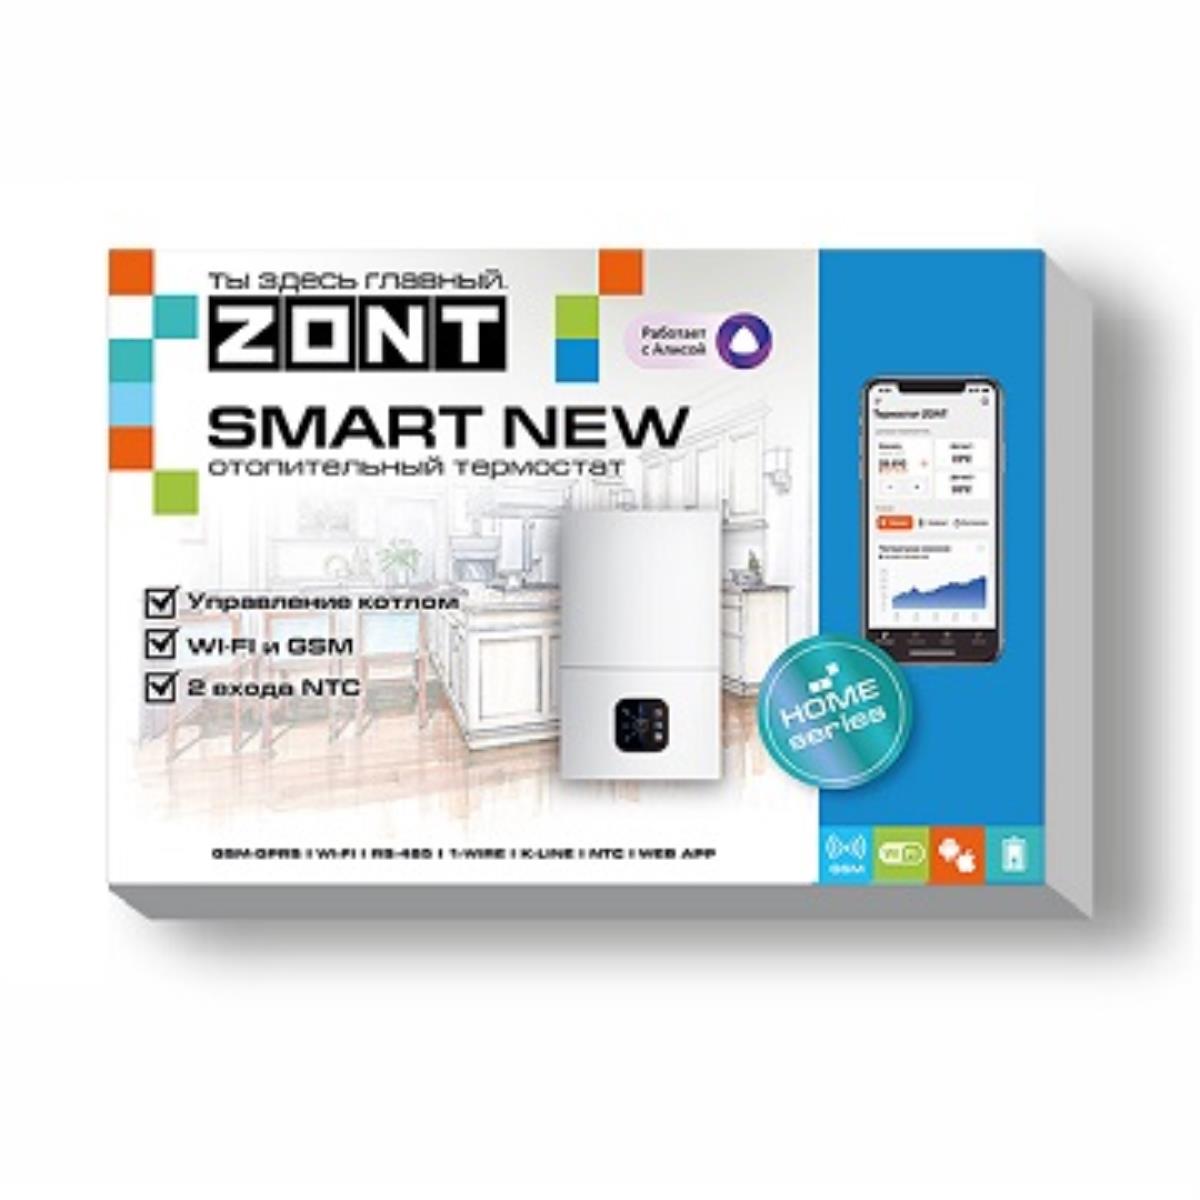 Отопительный GSM / Wi-Fi термостат ZONT SMART NEW "ZONT" (ML00005886)